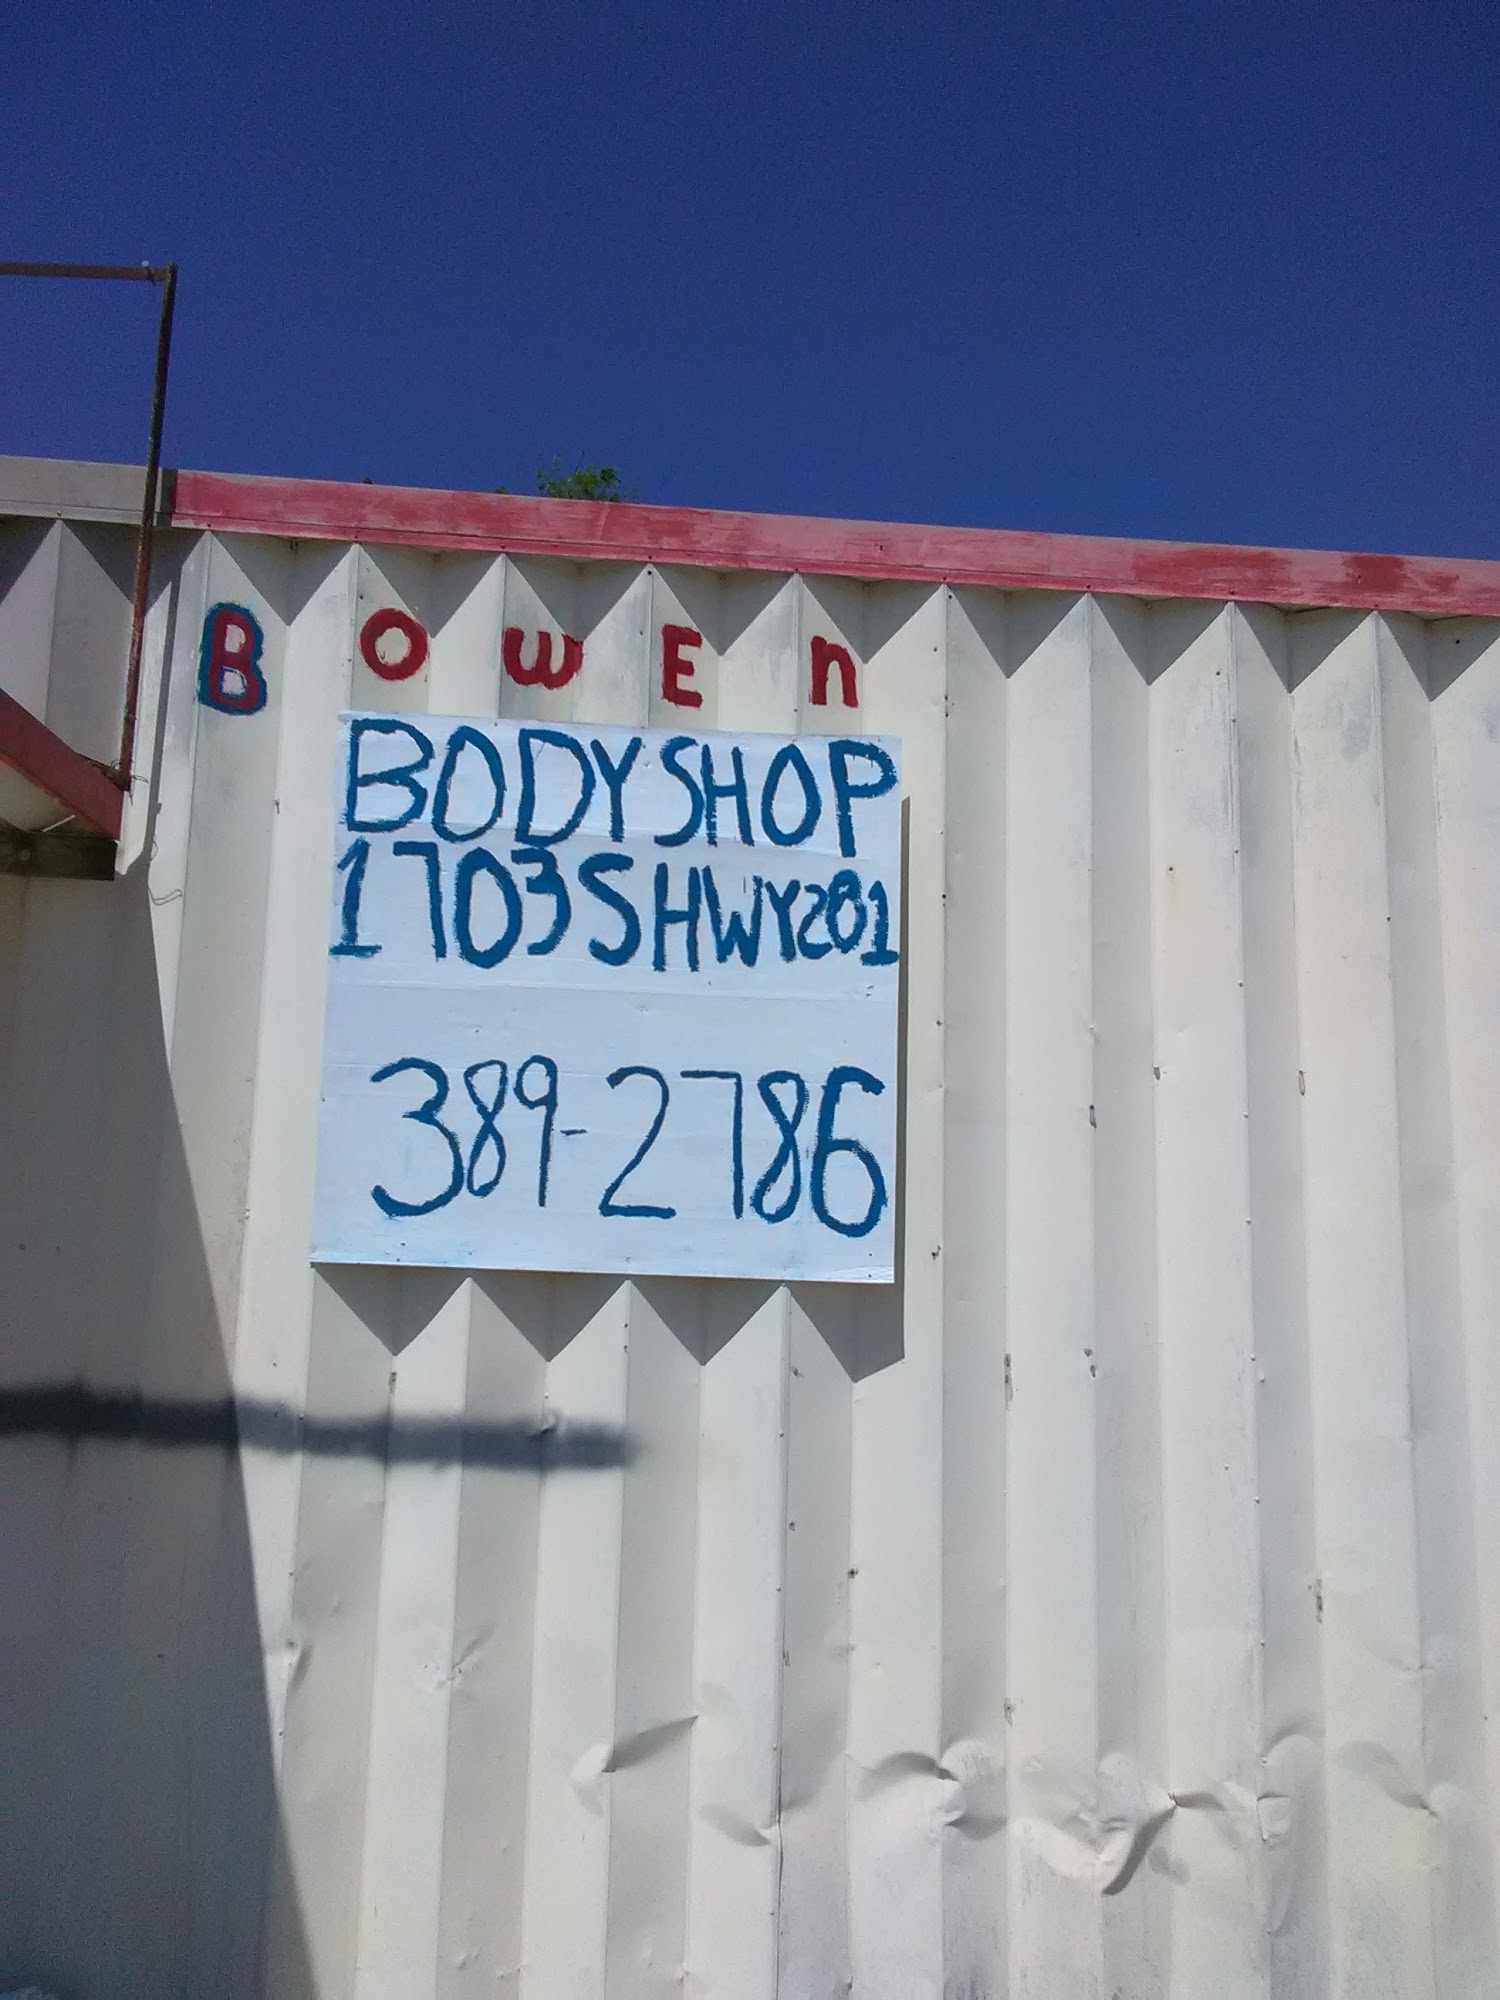 Bowen Body Shop